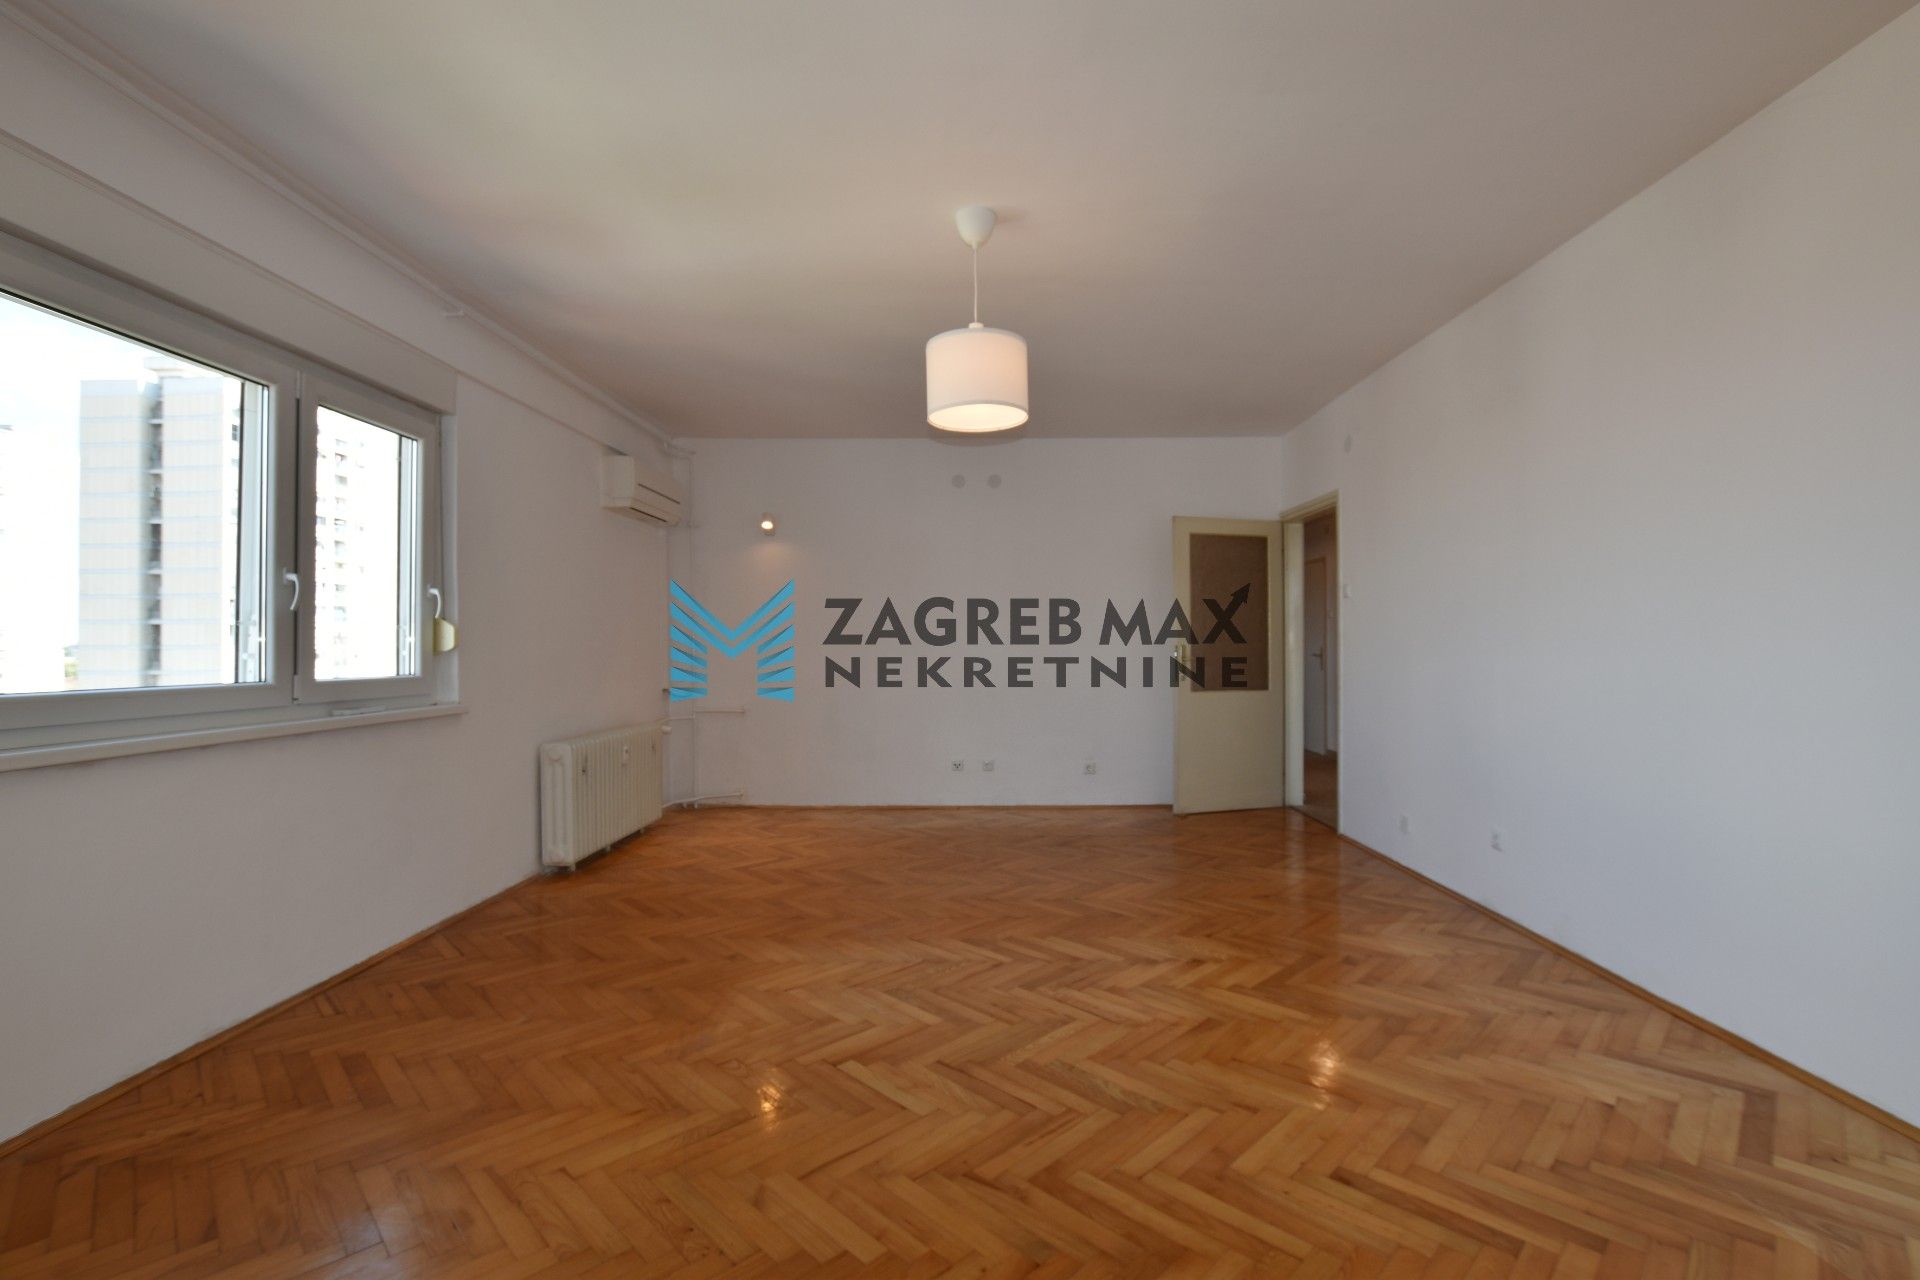 Zagreb - TREŠNJEVKA Labinska ulica, prostran 3soban stan 72 m2, 6. kat, odlična lokacija, loggia, spremište